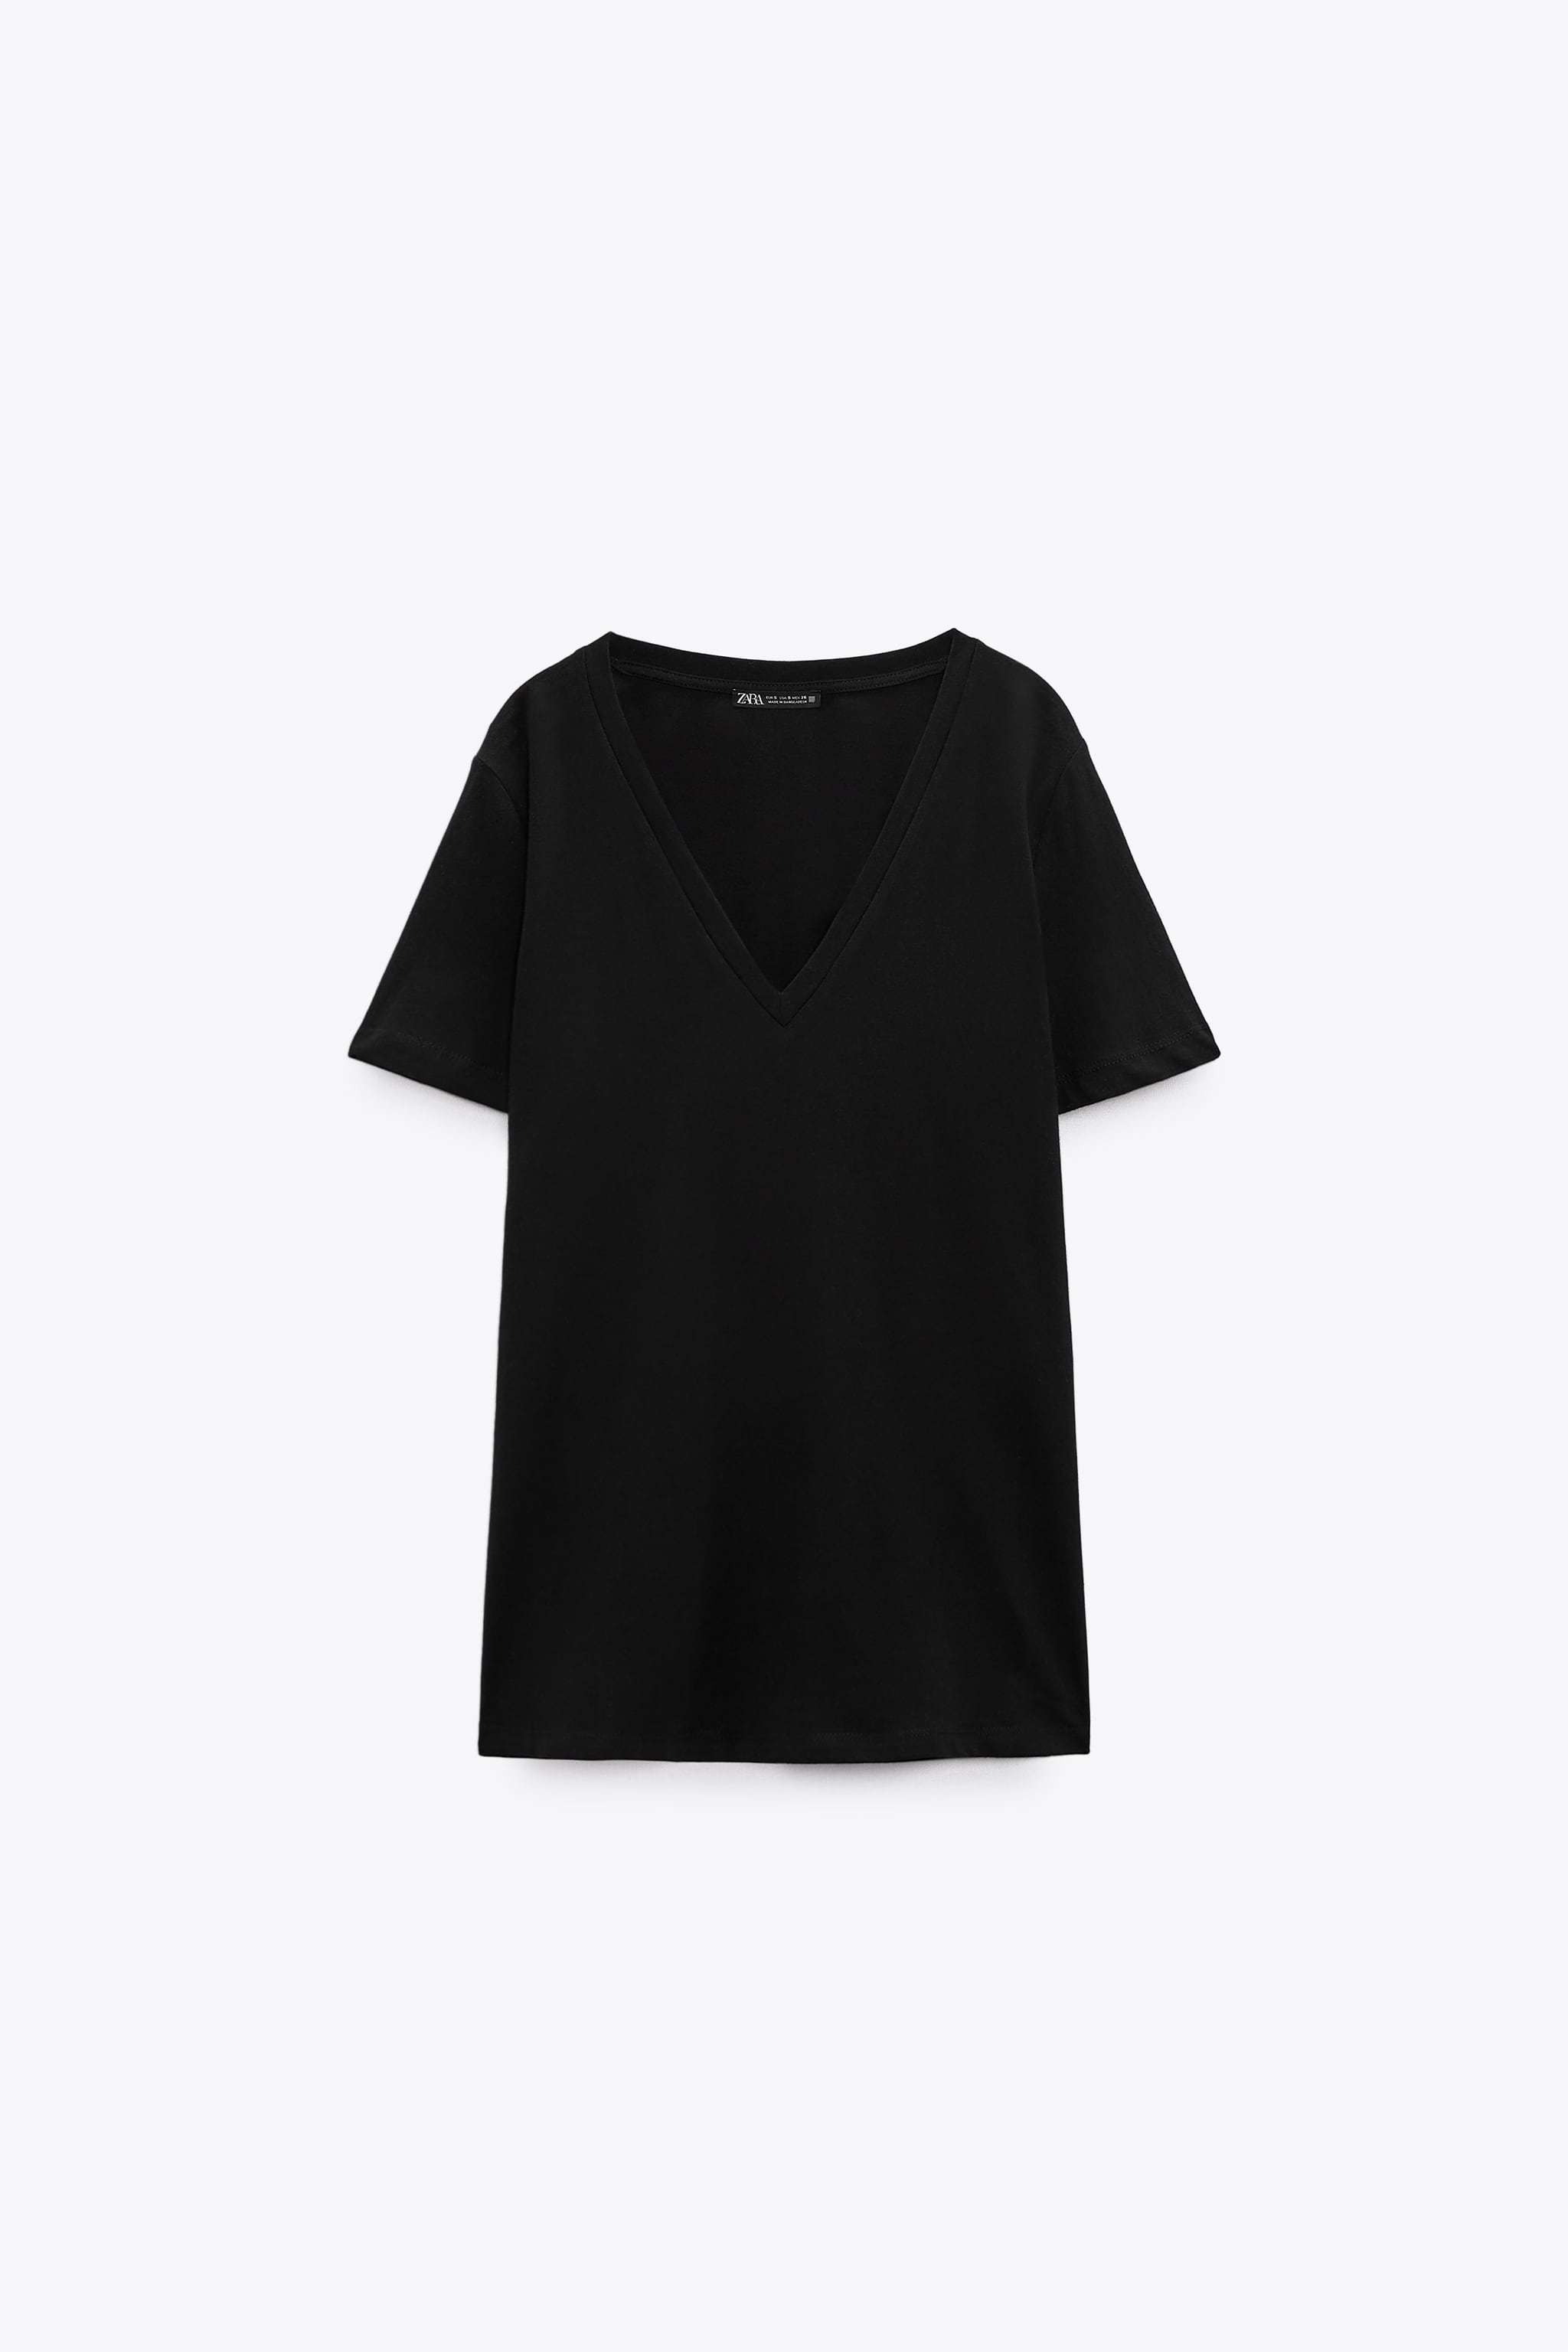 Camiseta de pico negra de Zara (6,95 euros).